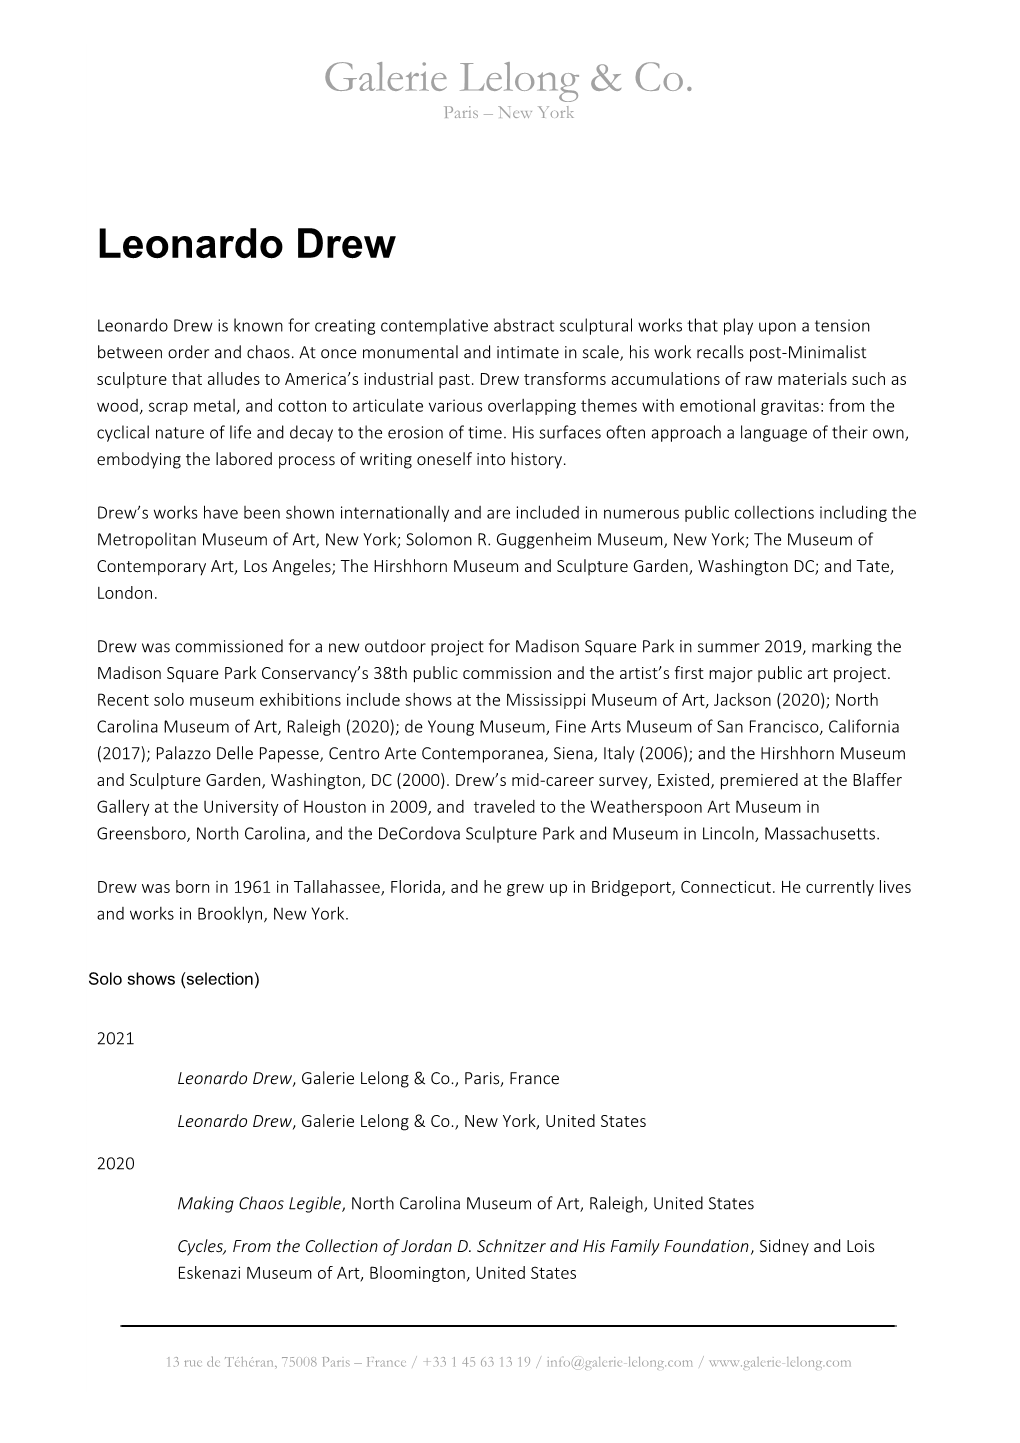 Leonardo Drew